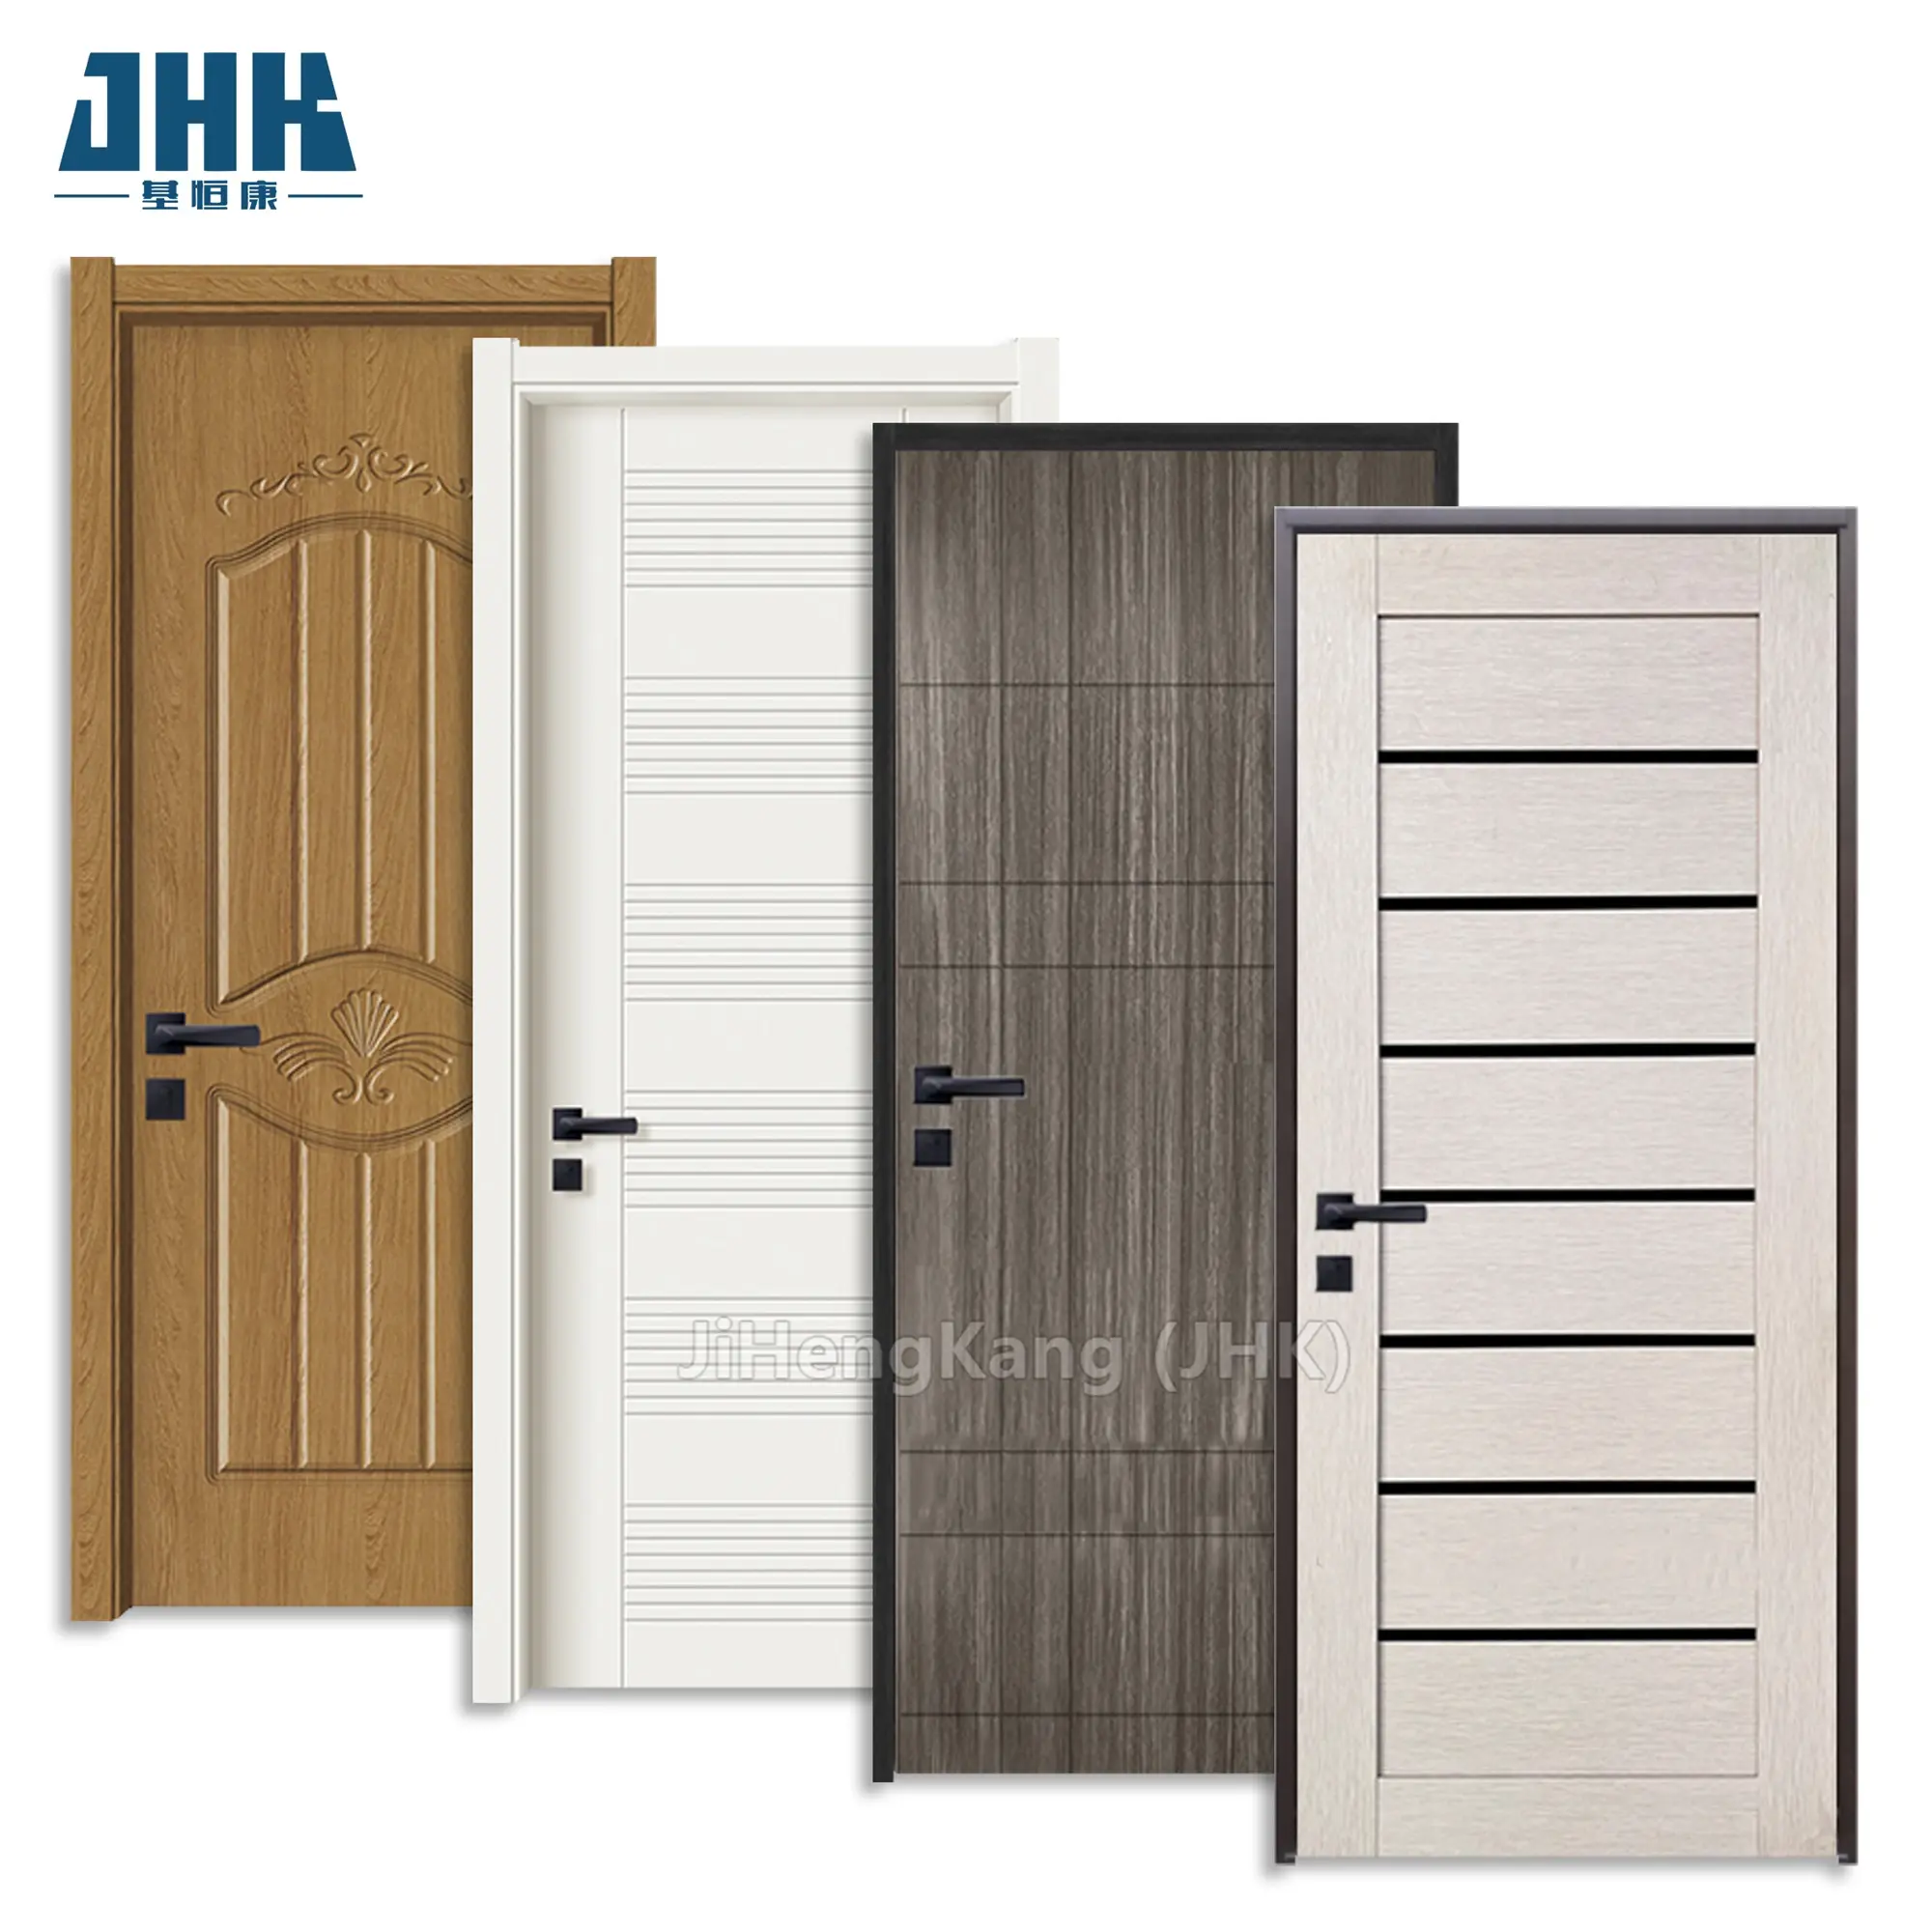 JHK-PS04 porta in PVC per uso domestico è facile da installare porte da bagno in pvc bianco impermeabile prezzo porte in pvc prezzi di buona qualità